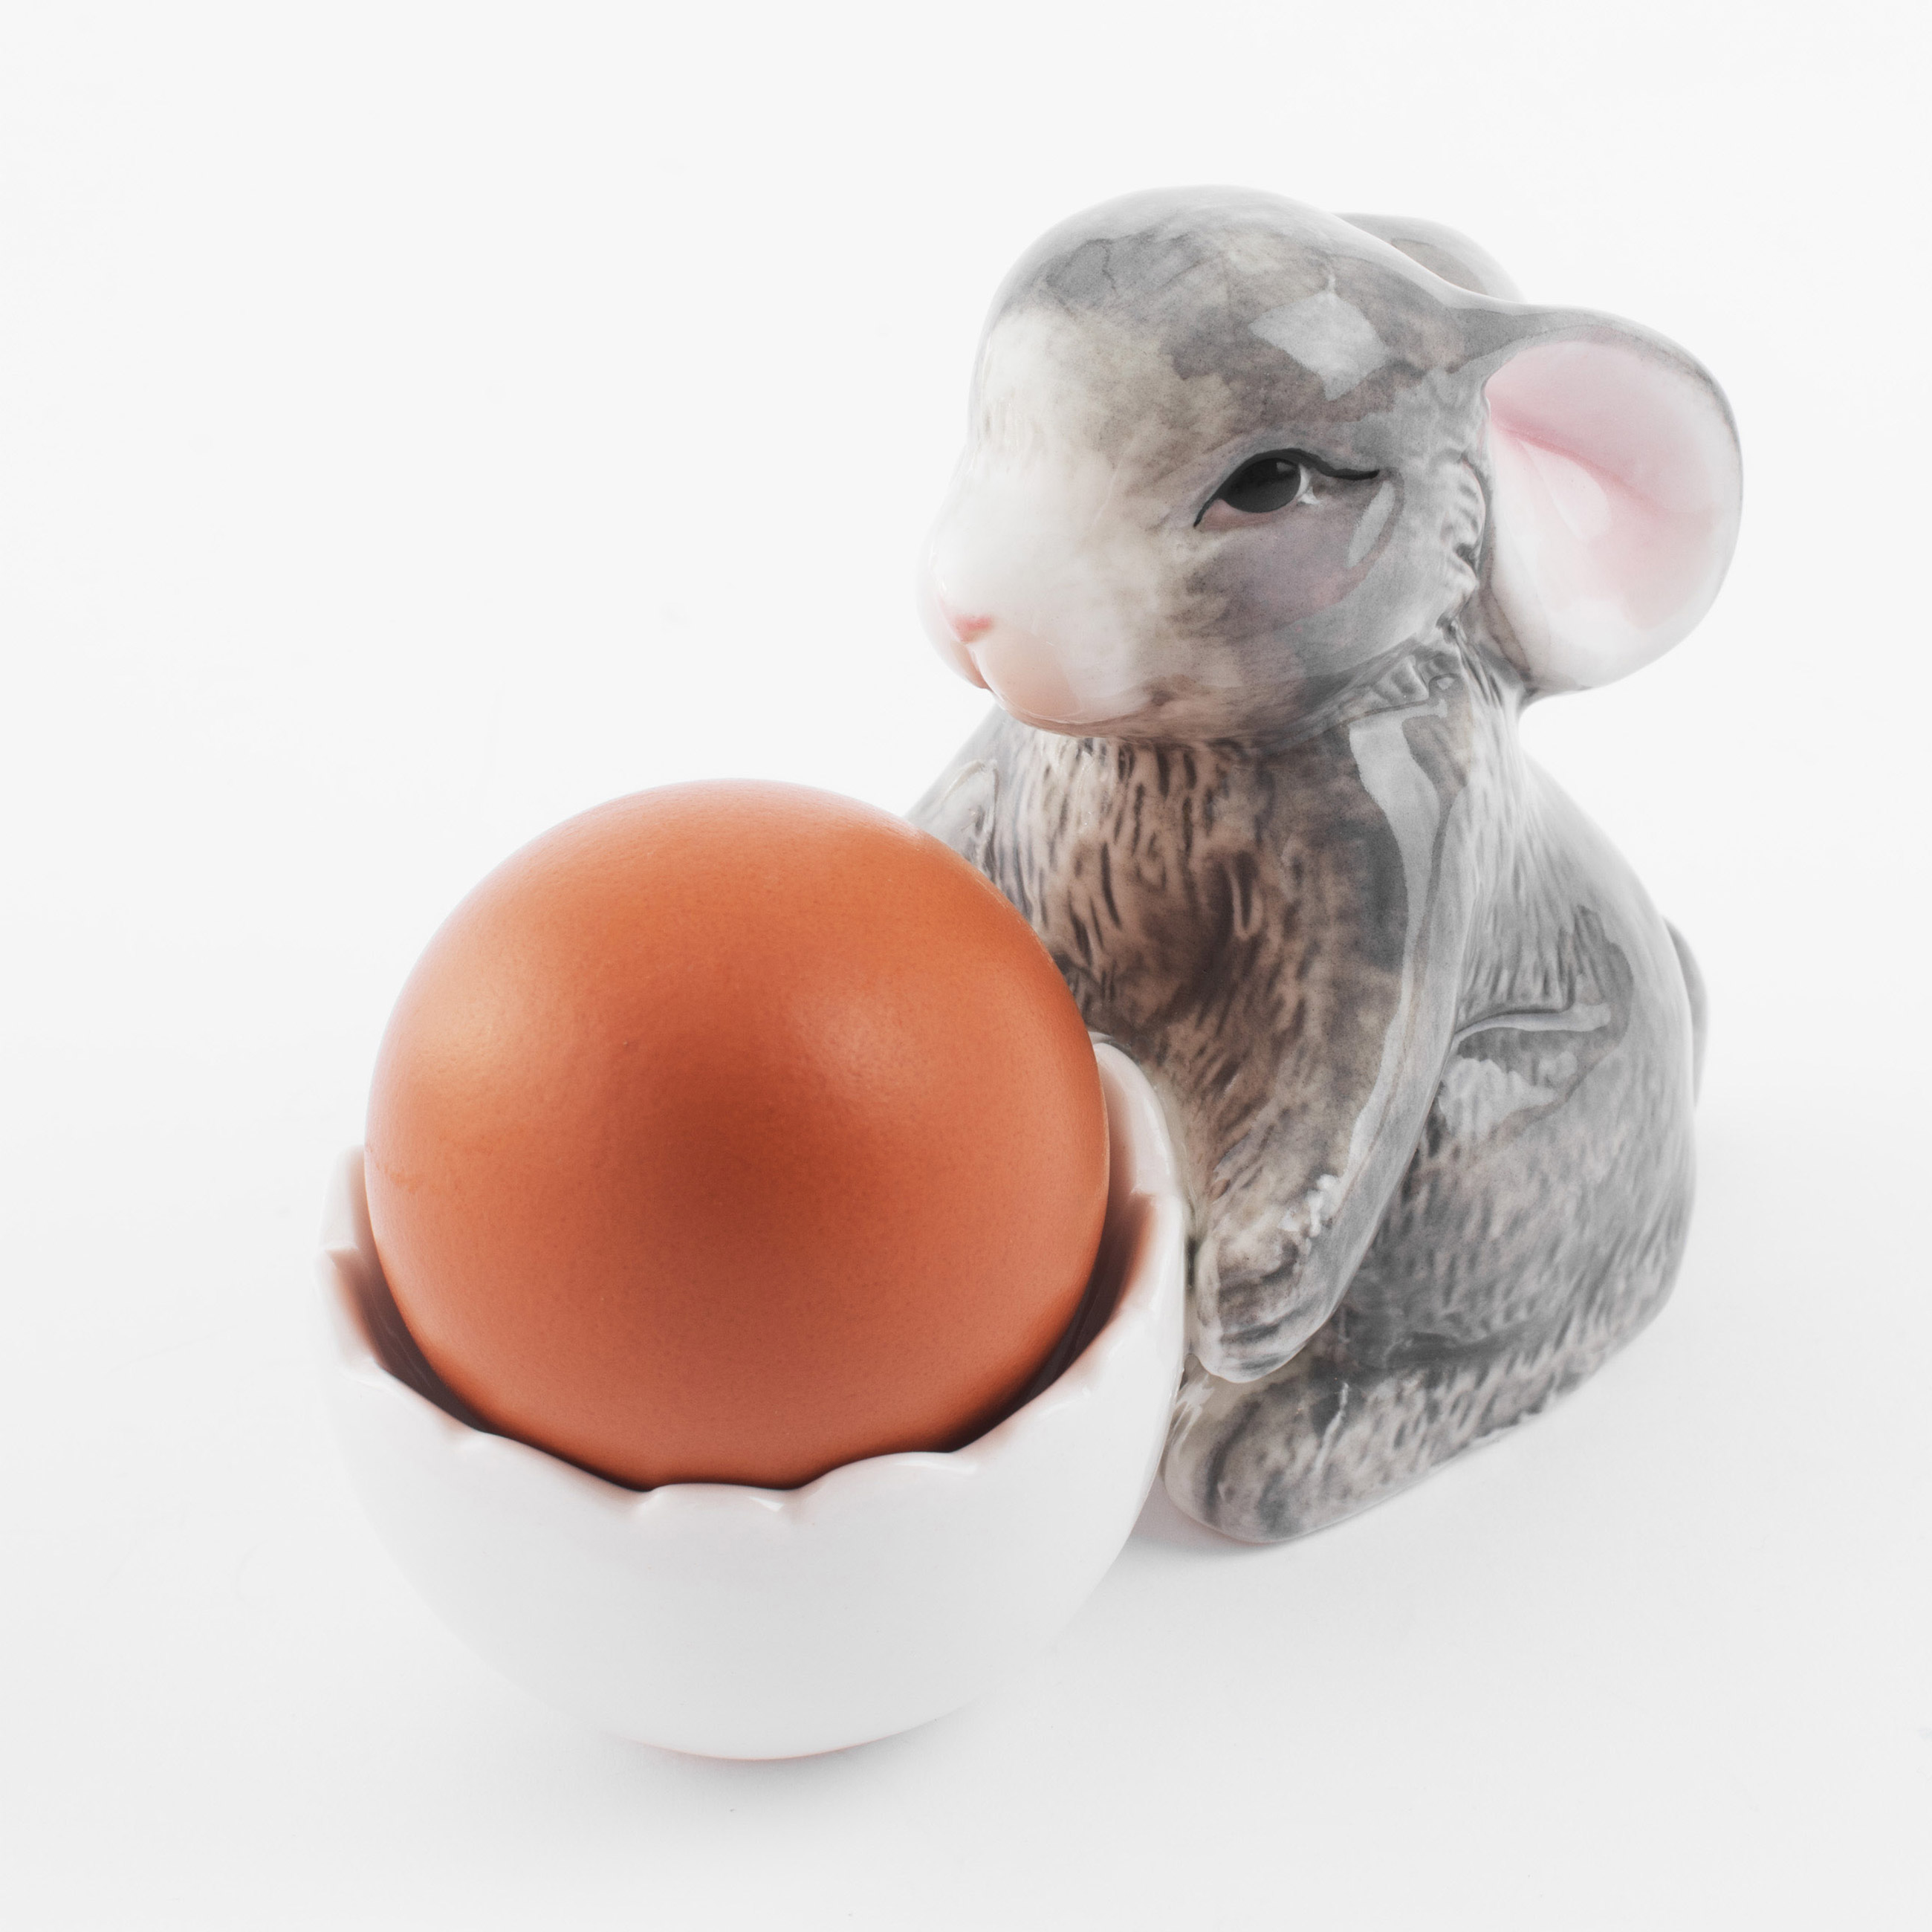 Подставка для яйца, 11 см, фарфор P, бело-серая, Кролик со скорлупой, Pure Easter изображение № 6